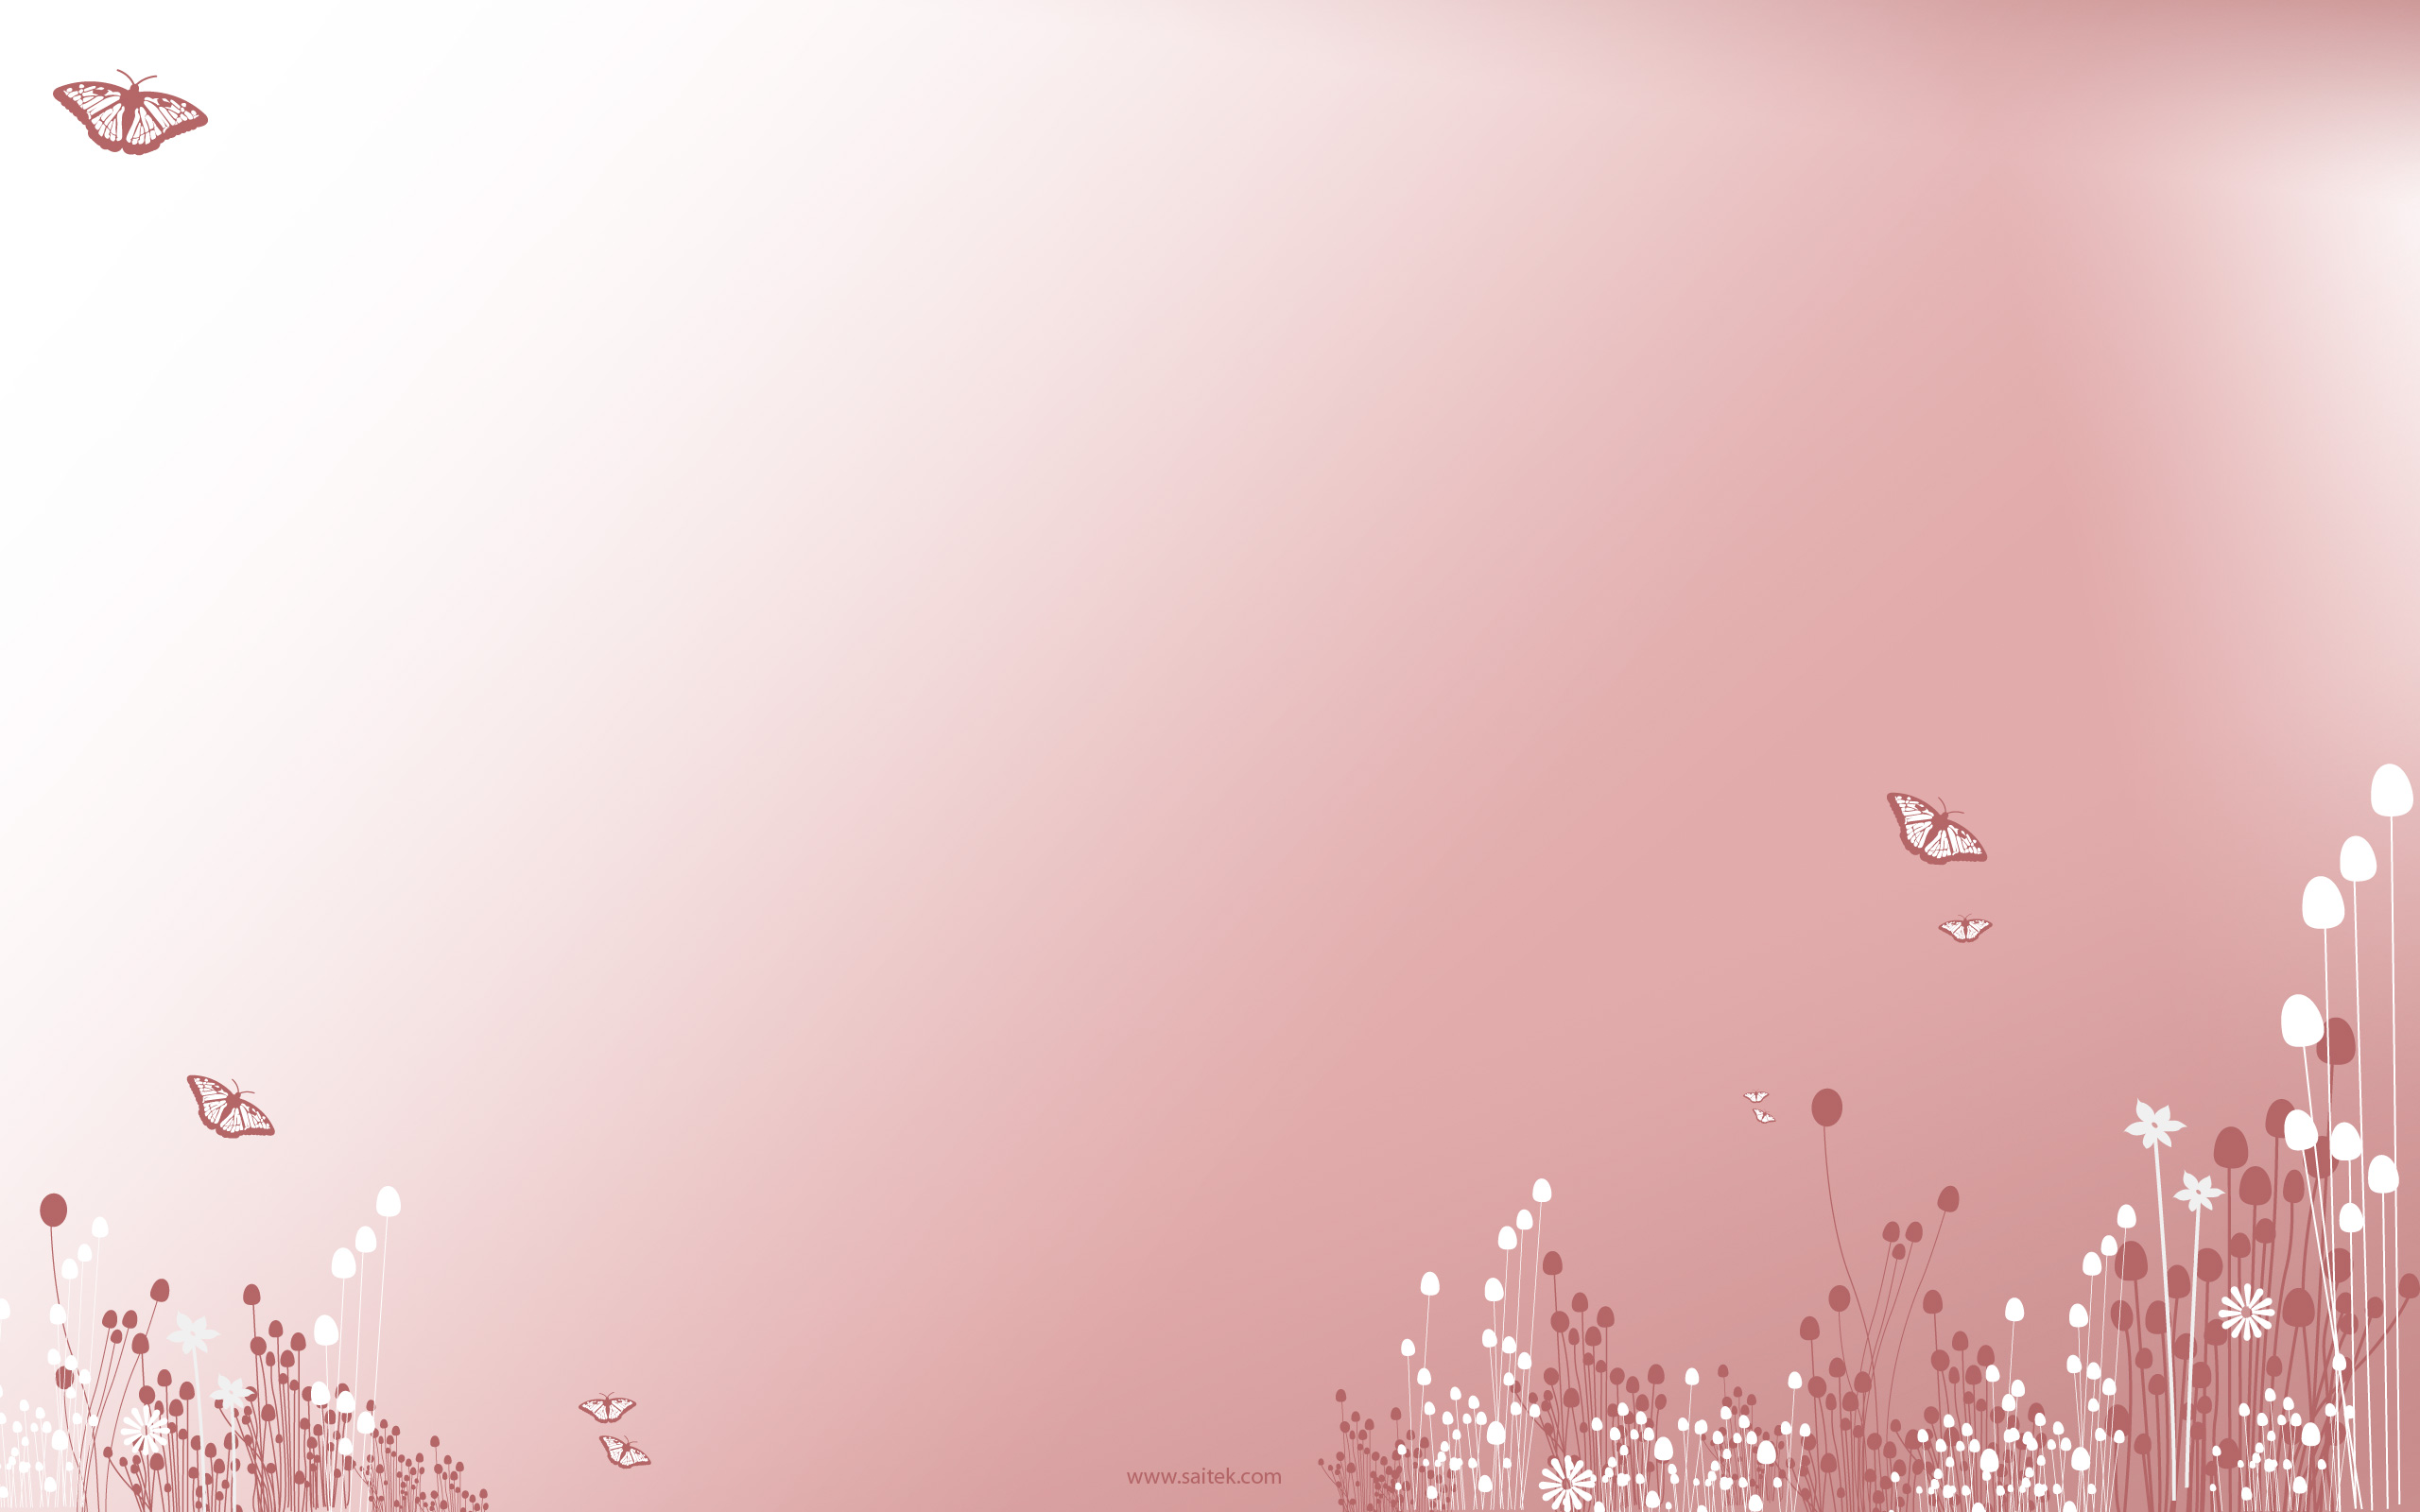 farfalla rosa live wallpaper,rosa,rosso,testo,cielo,acqua